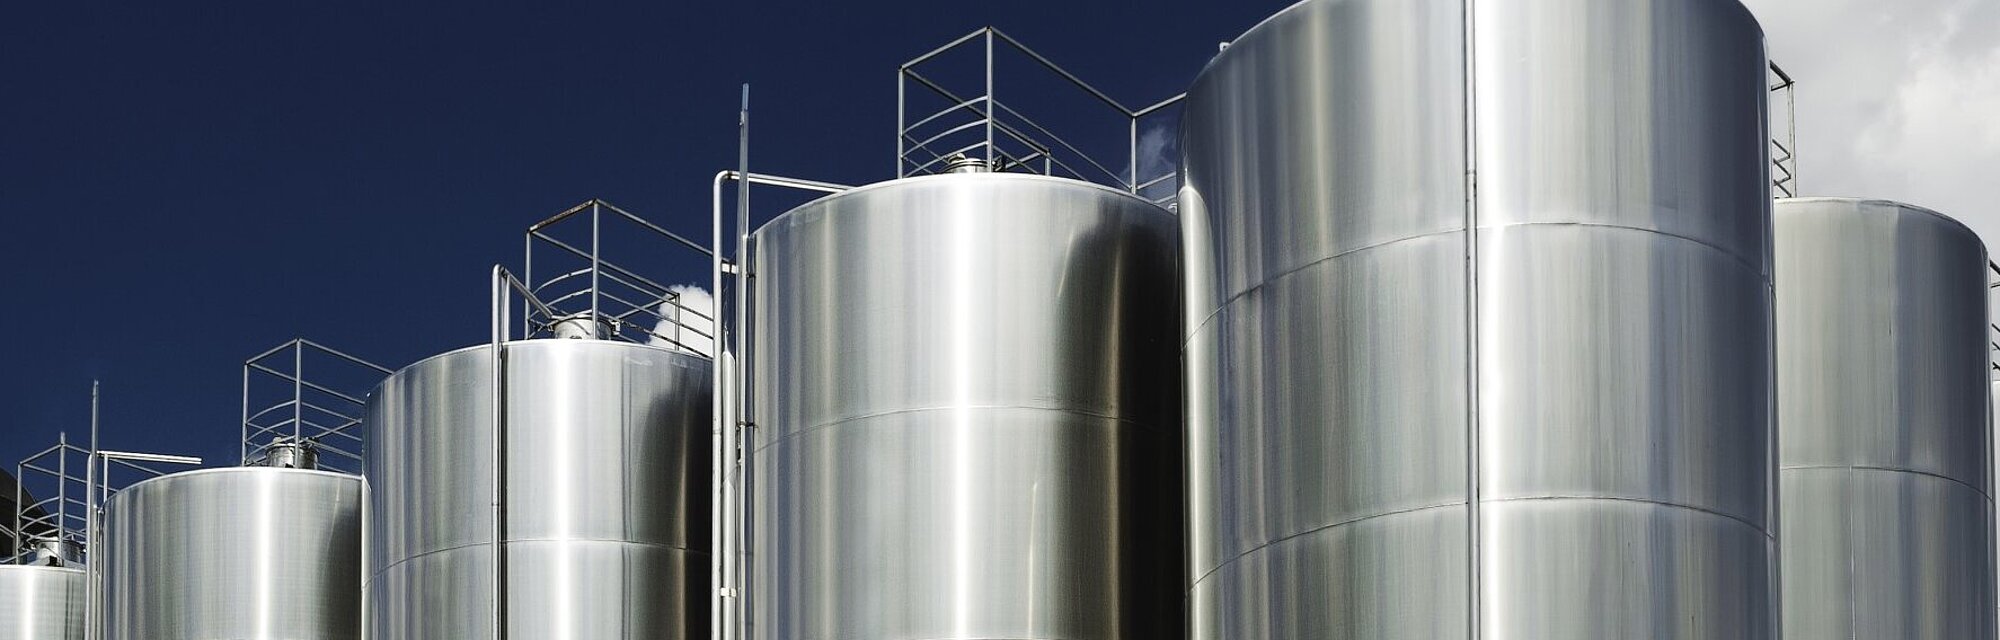 Absicherung von Lagertanks für Ethanol und andere Alkohole